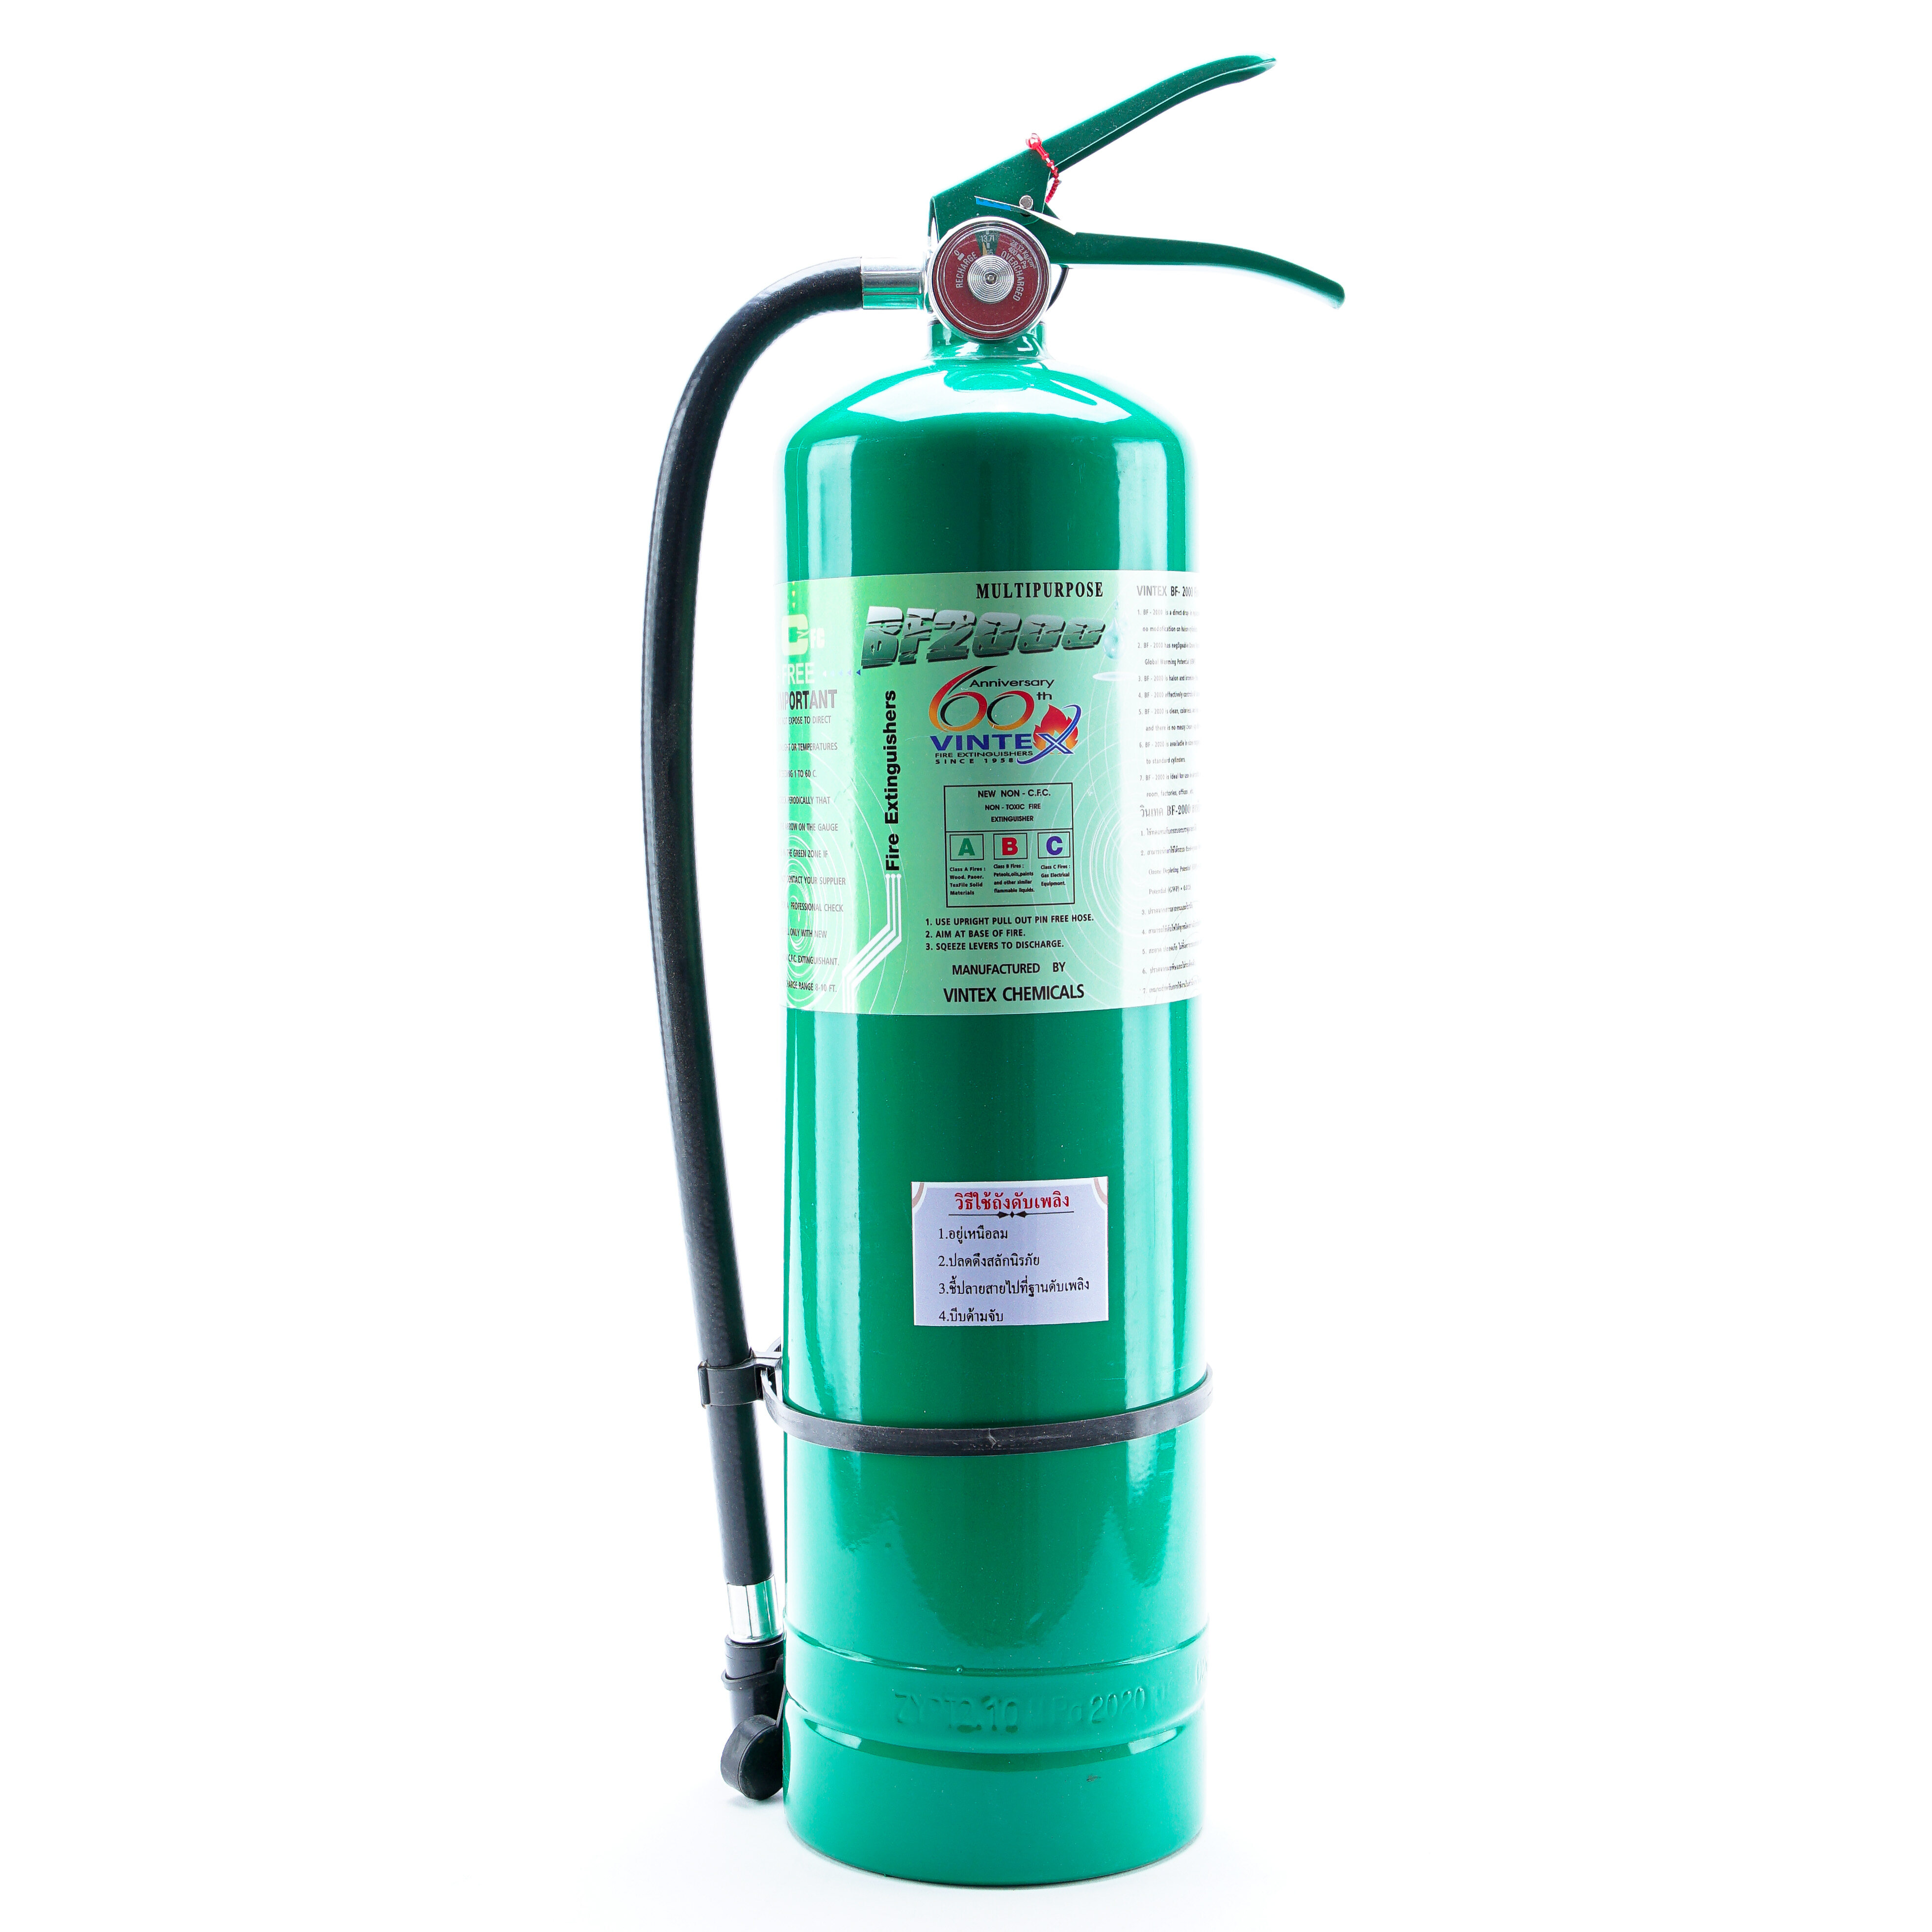 ถังดับเพลิงสีเขียว VINTEX ขนาด 10 ปอนด์ น้ำยาเหลวเป็นมิตรกับสิ่งแวดล้อม BF2000 (Non-CFC) รับประกัน 3 ปี มีมอก. Made in Thailand เติมน้ำยาได้ ราคาพิเศษ